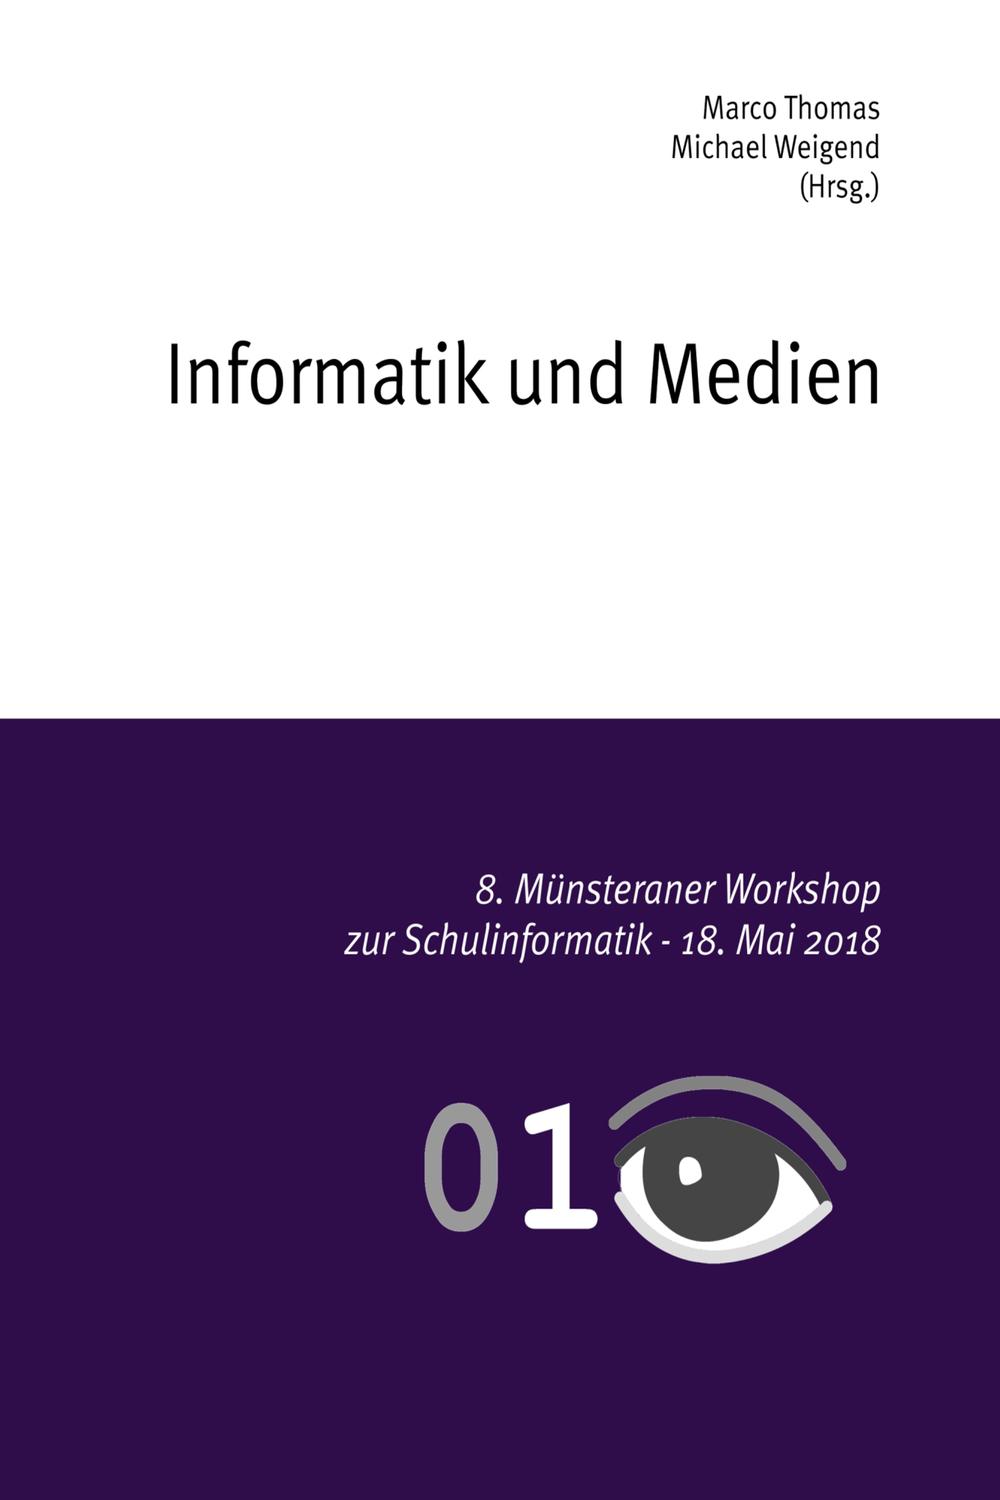 Informatik und Medien - Marco Thomas, Michael Weigend